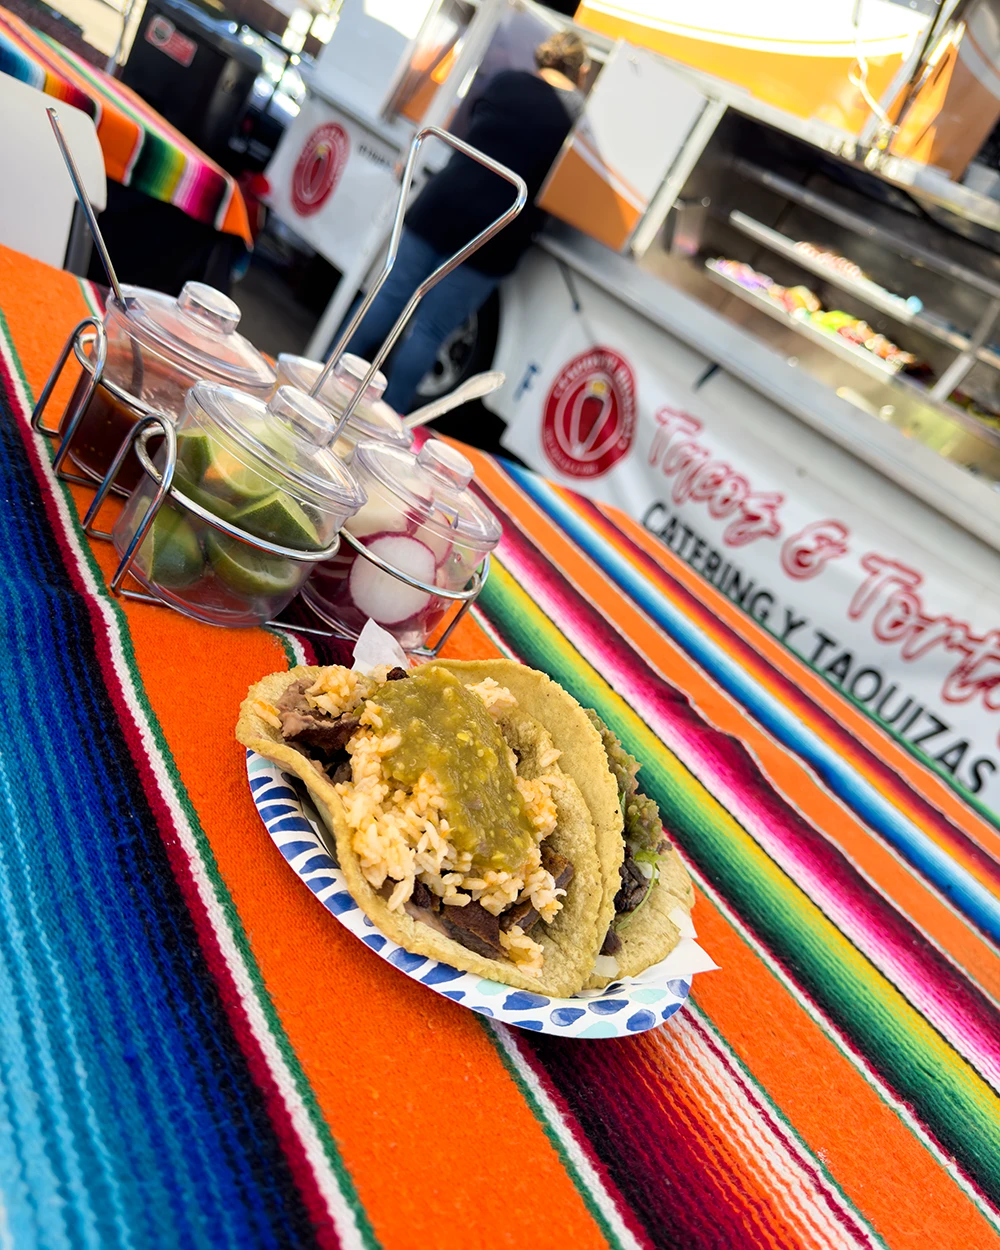 Tacos El Rummy in Chula Vista is a great spot